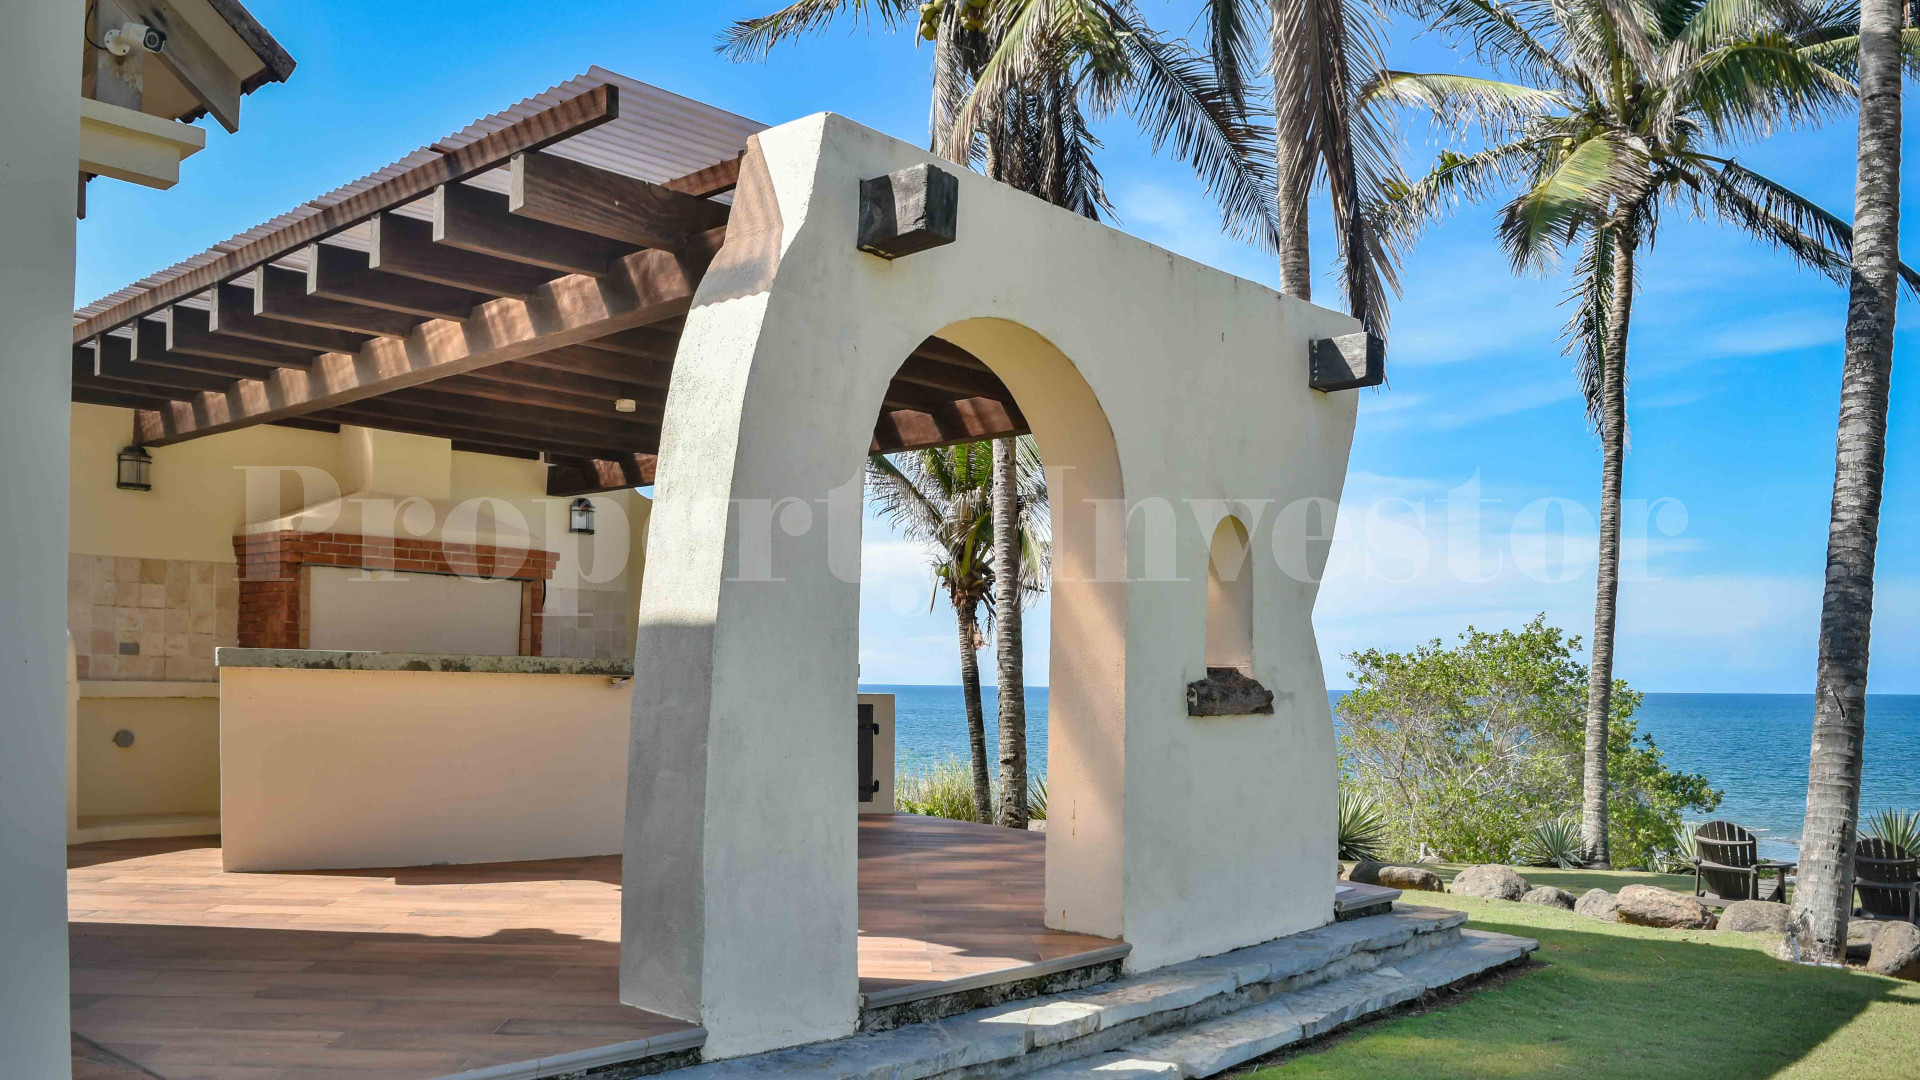 Продаётся потрясающий роскошный дом на 4 спальни в стиле испанского колониального возрождения в Педаси, Панама